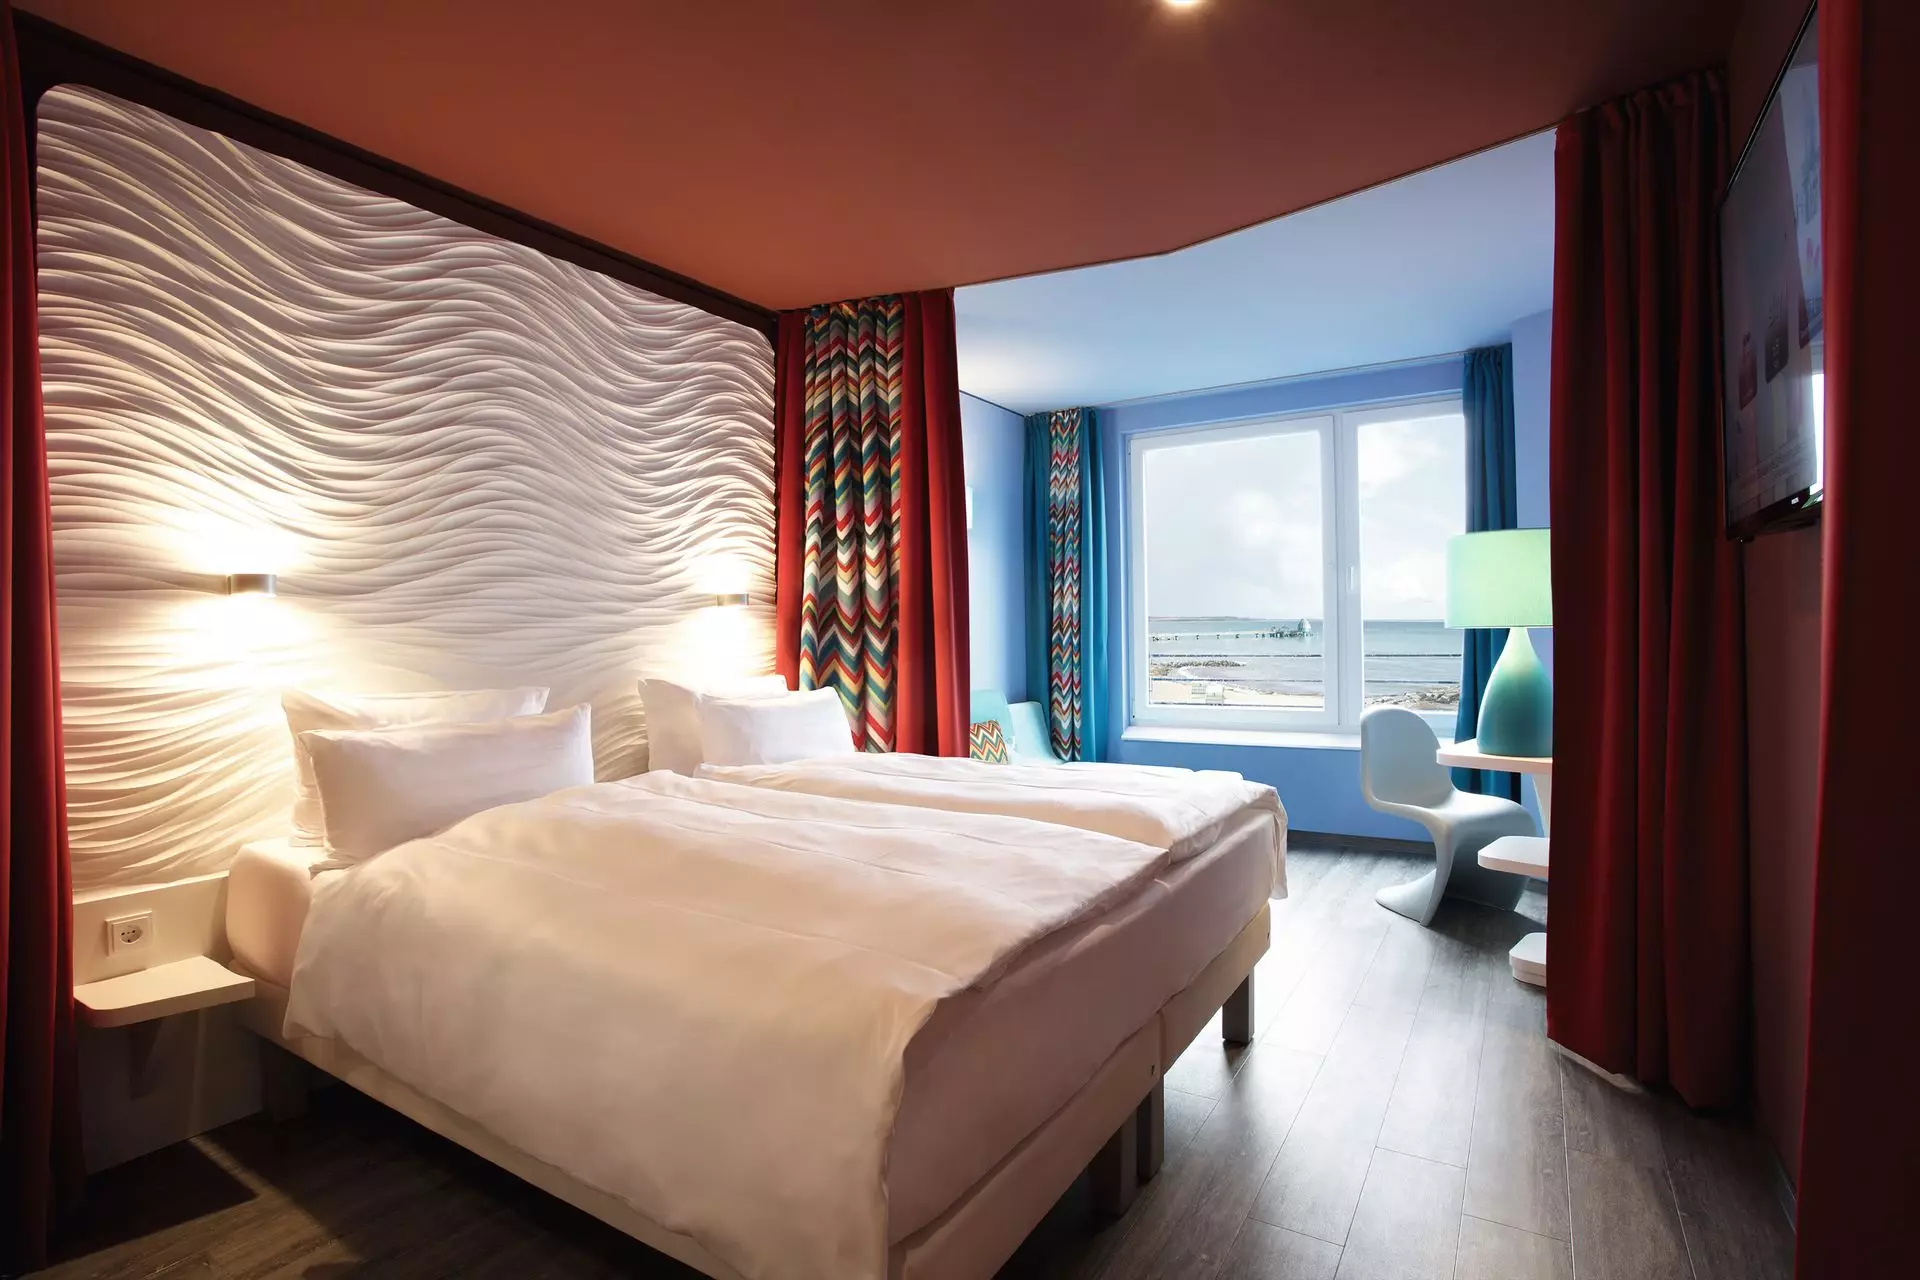 Ein mit weißer Bettwäsche bezogenes Doppelbett steht vor einer weißen Rückwand mit Struktur. Umrahmt von einer dunkelroten Wand und einem rot-gemusterten Vorhang steht das Bett in einem Raum mit rostroter Decke und dunklem Holzboden. Im Hintergrund ist ein von blauen Wänden umrahmtes Fenster mit Blick auf die Ostsee zu erkennen.